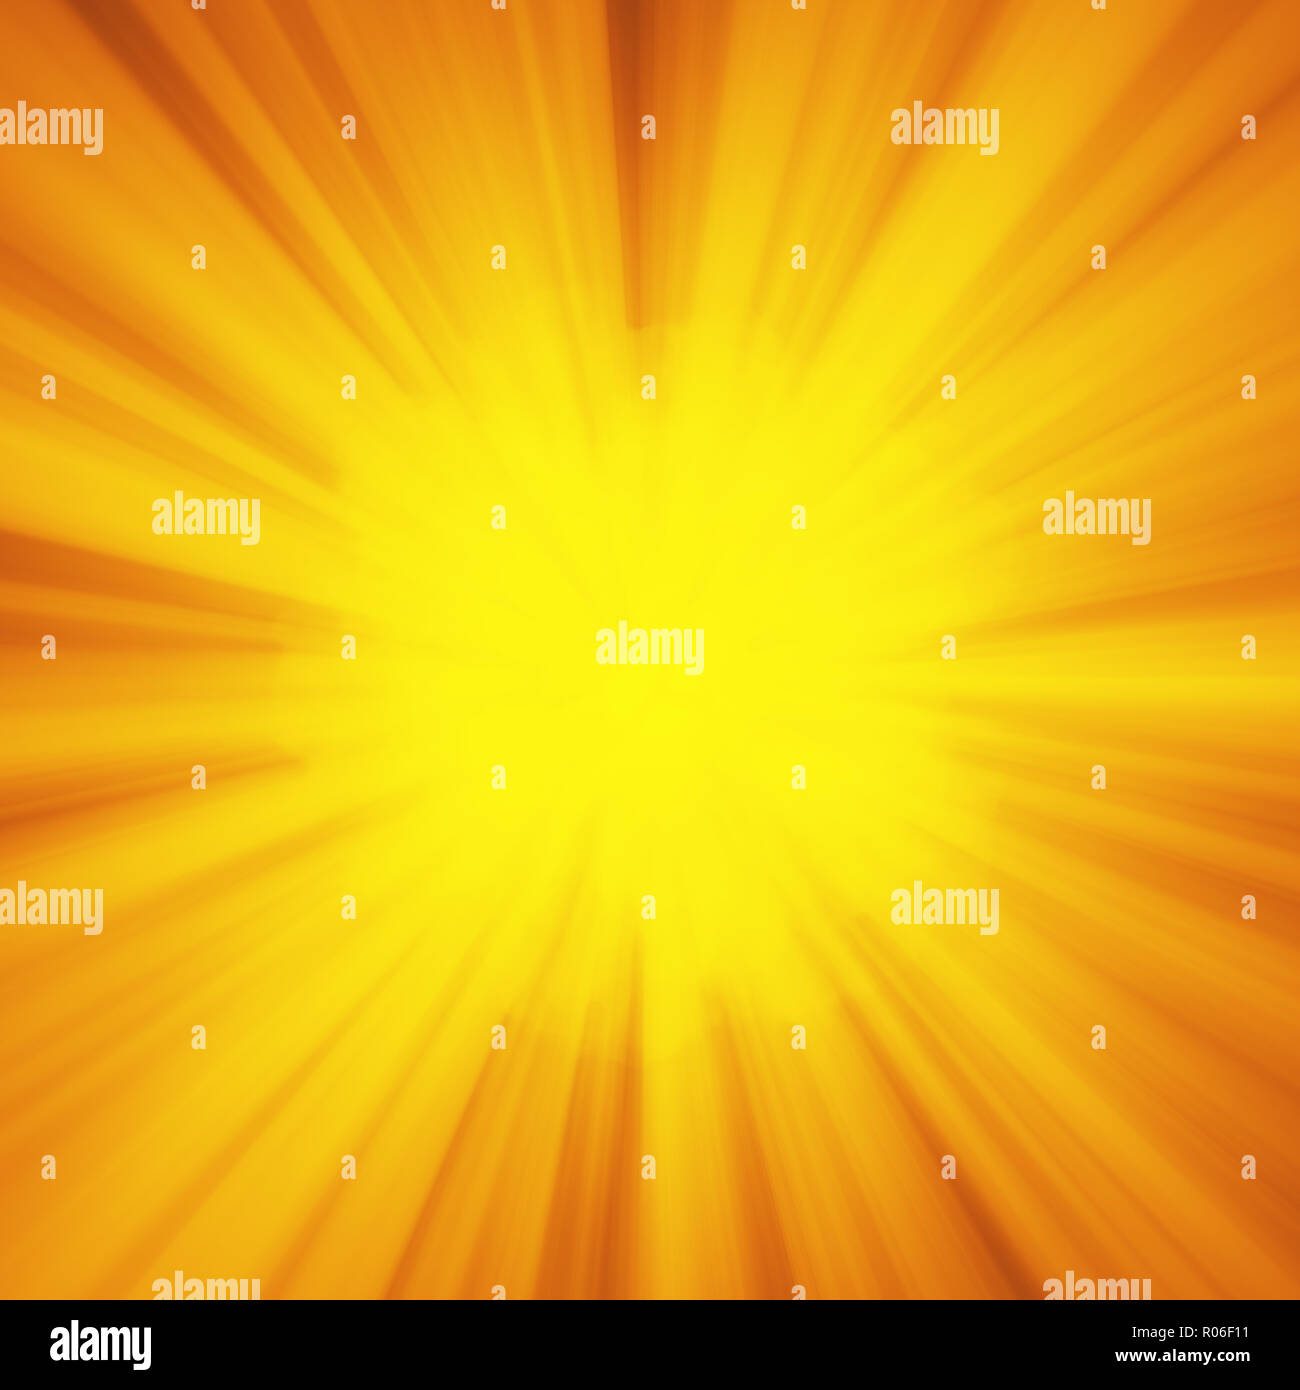 Hintergrund mit abstrakten Explosion oder hyperspeed Warp sun Gott strahlen. Helles orange gelb Light Strip Burst, Flash ray Blast. Abbildung mit Copyspace für Ihren Text Stockfoto